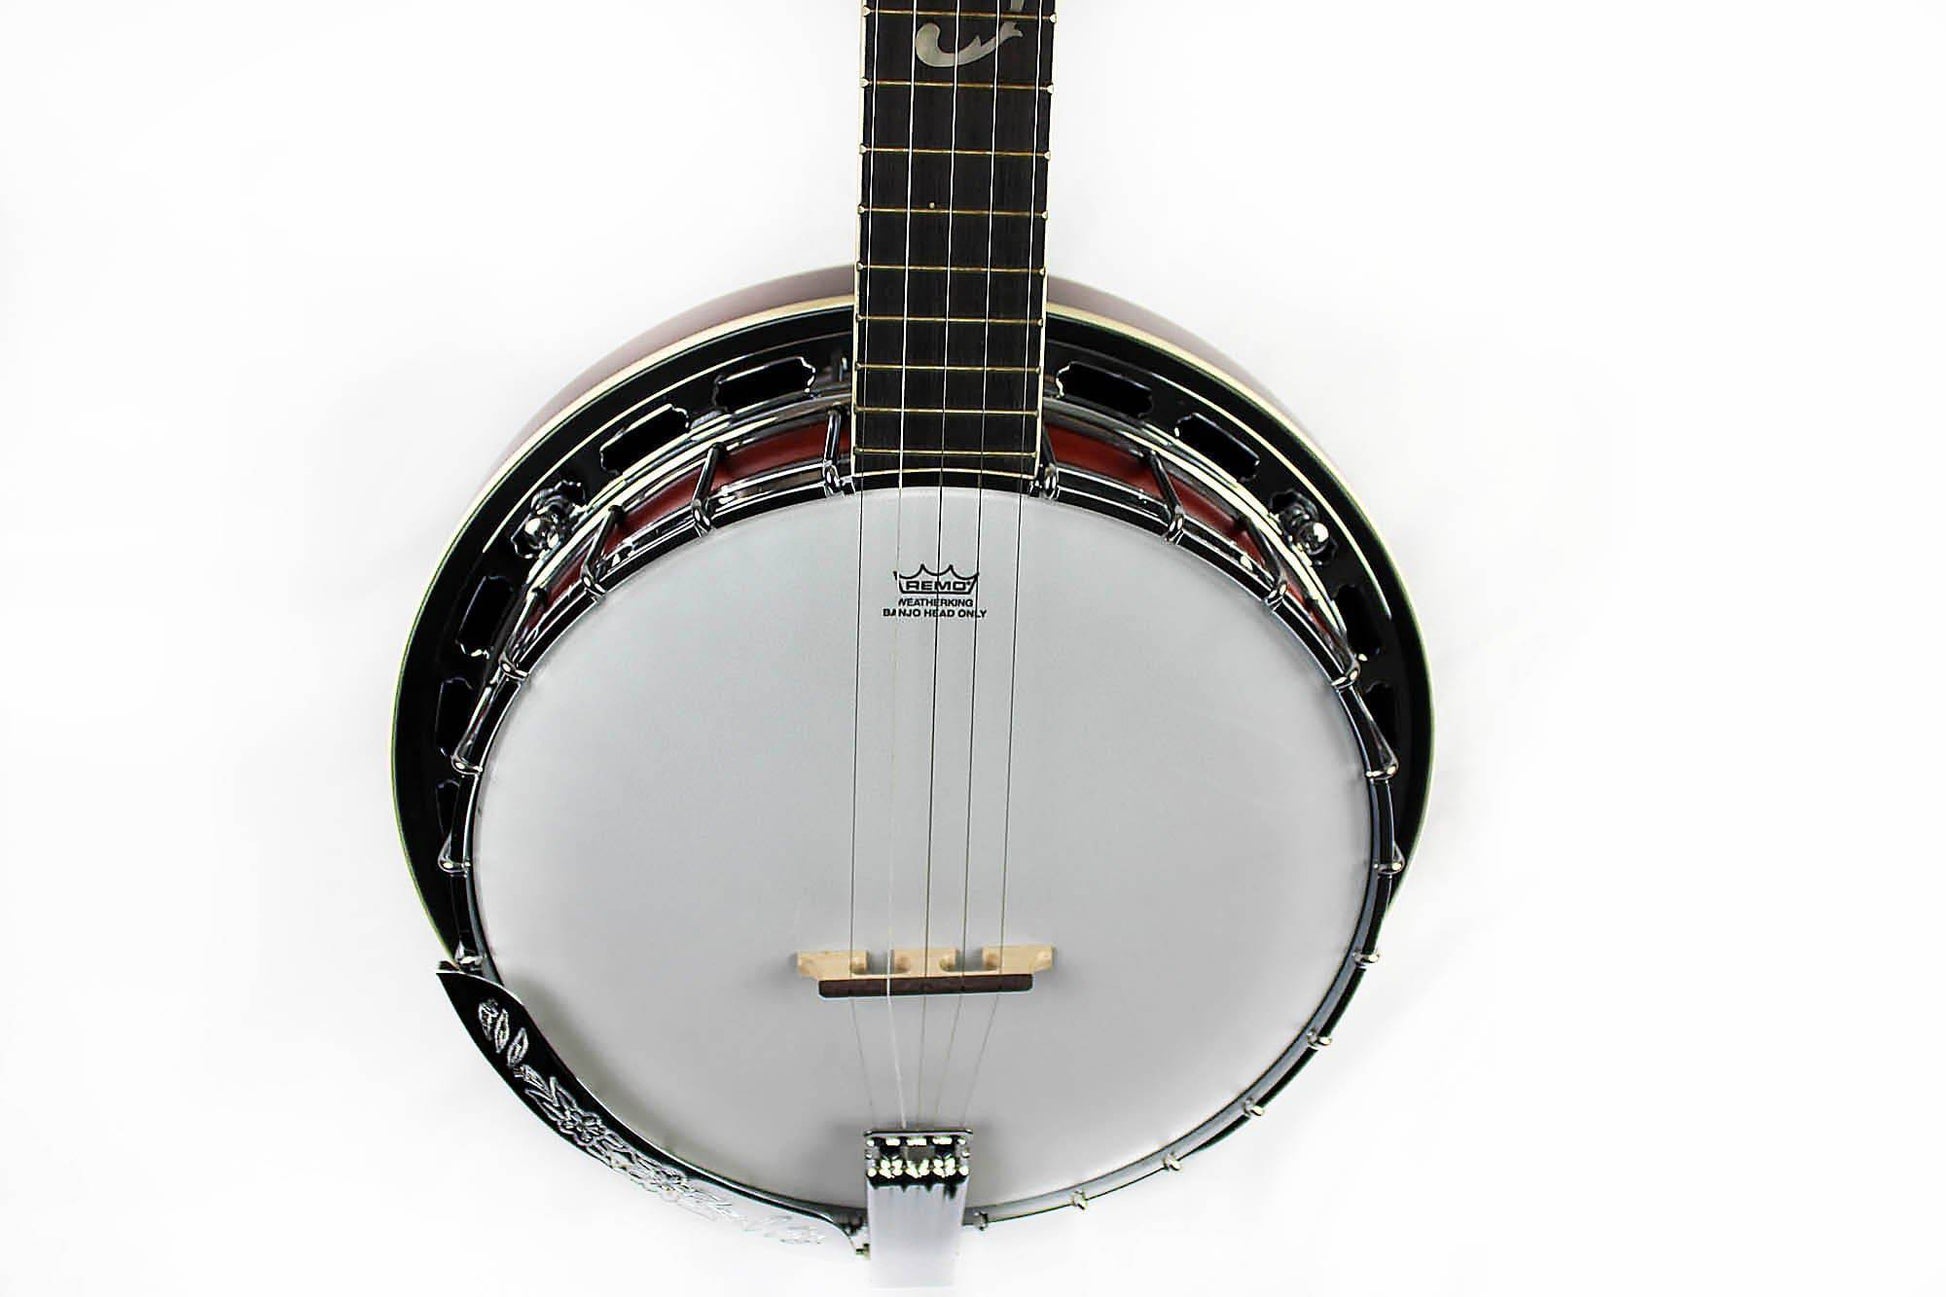 Achetez Ibanez B200 5 String Banjo wBasswood Rim chez Ubuy Maroc